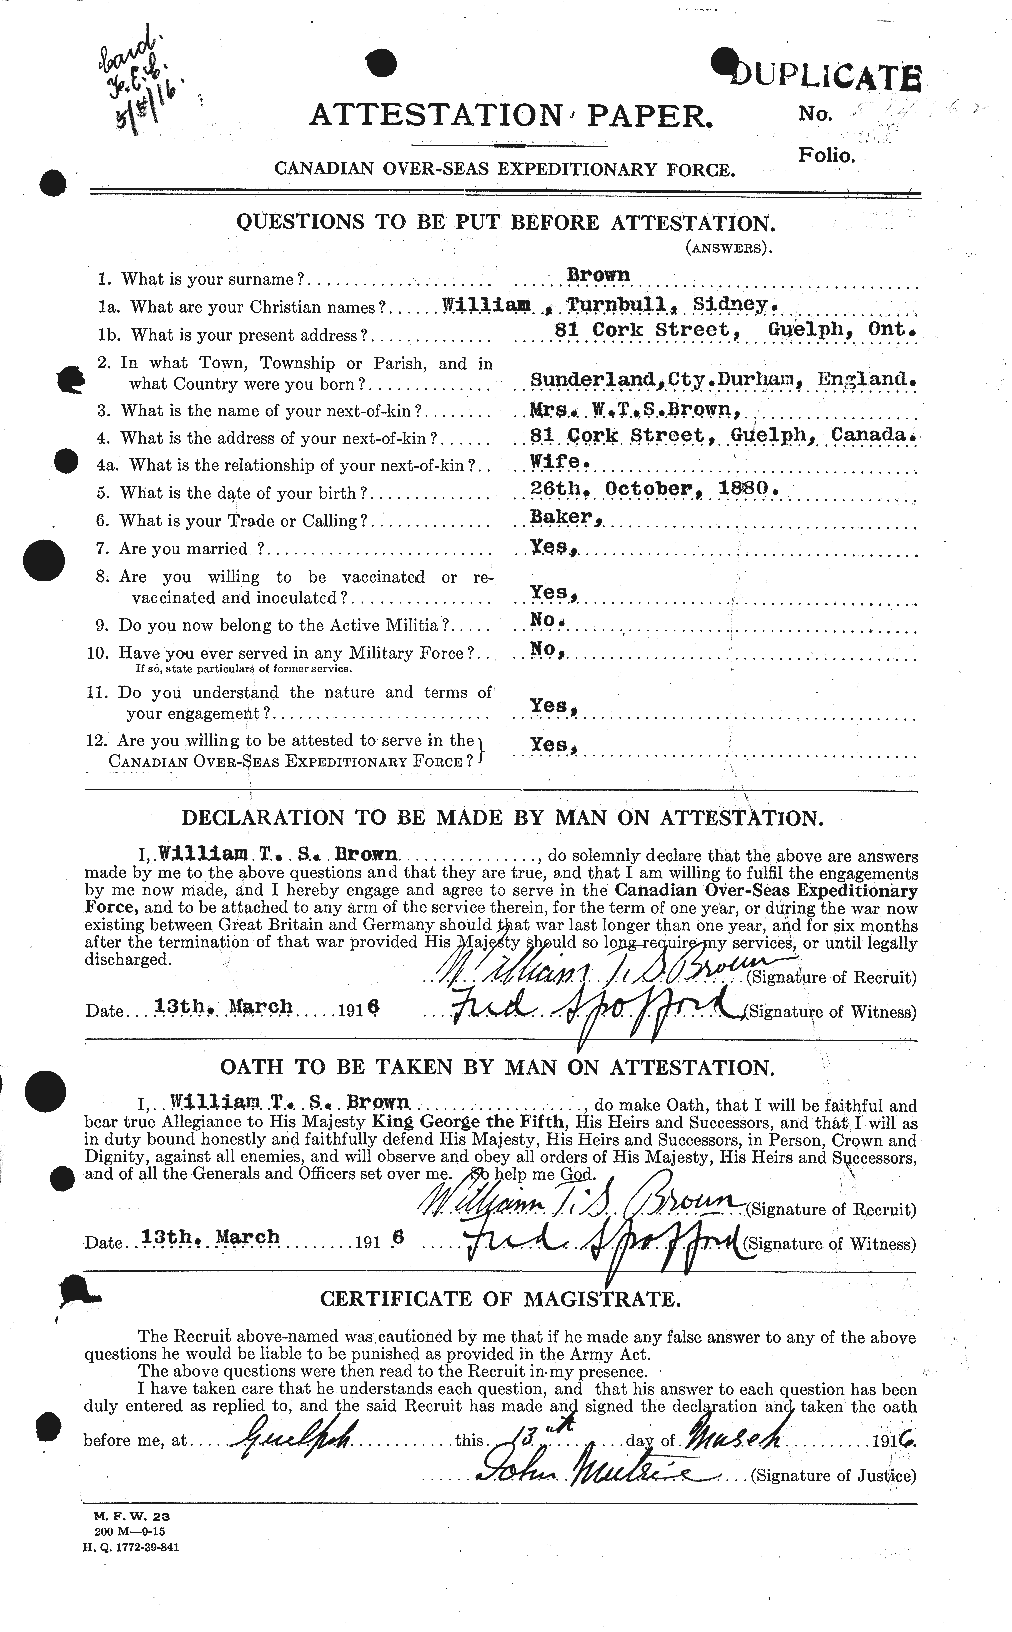 Dossiers du Personnel de la Première Guerre mondiale - CEC 270892a